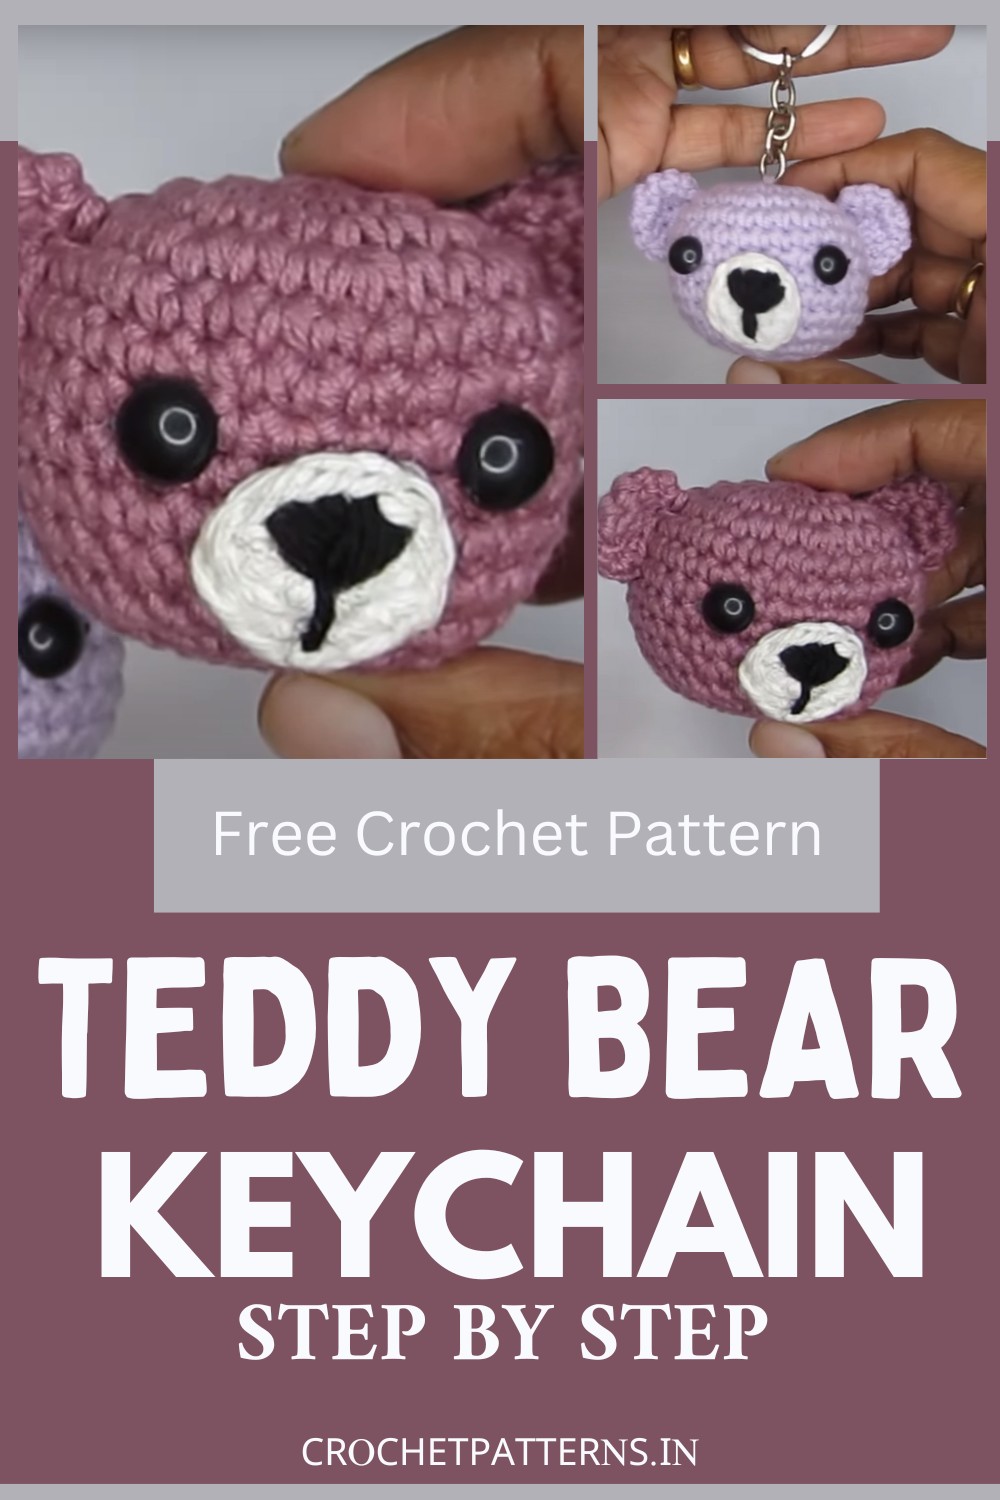 Crochet Amigurumi Teddy Bear Head Keychain